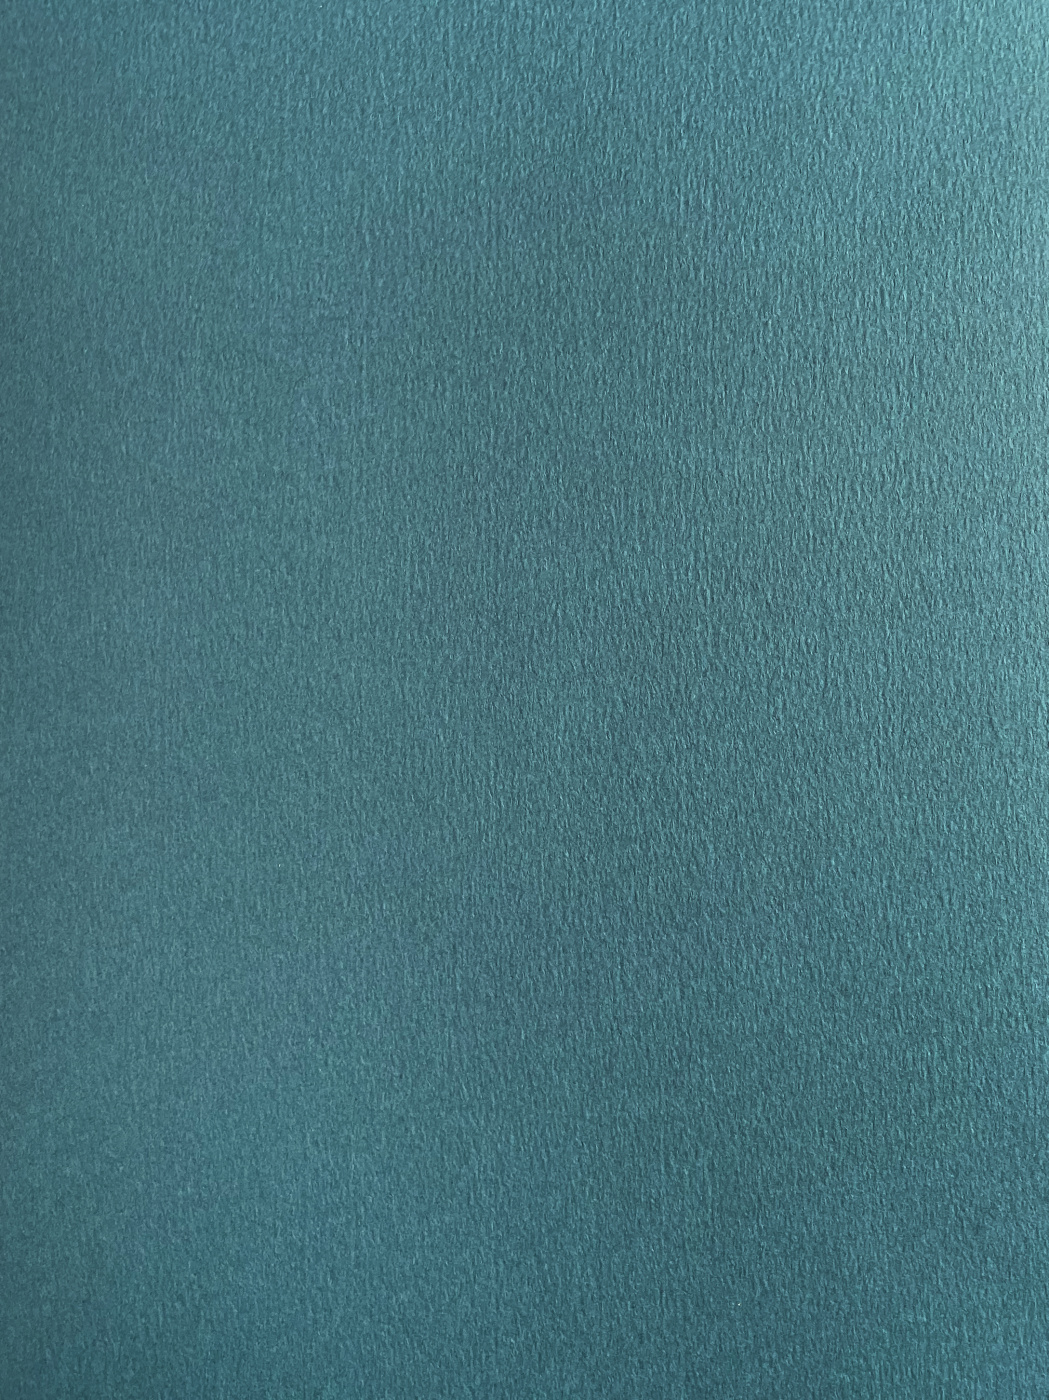 Бумага для пастели Малевичъ GrafArt А4 270 г, морская волна бумага для скрапбукинга летняя волна плотность 180 гр 15 5х17 см